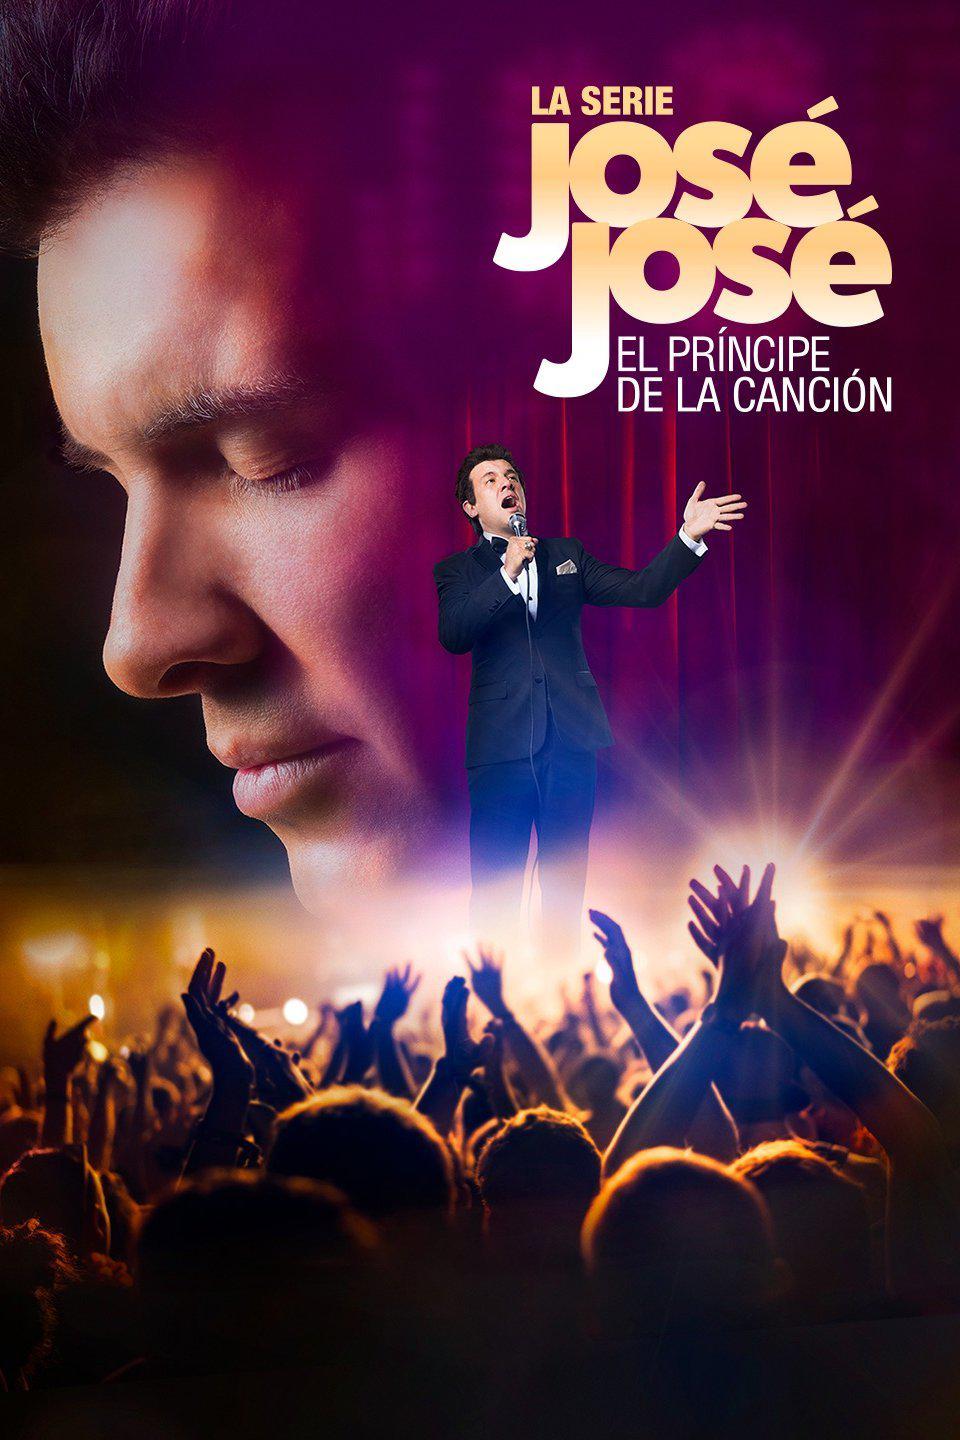 TV ratings for José José, El Príncipe De La Canción in Spain. Telemundo TV series